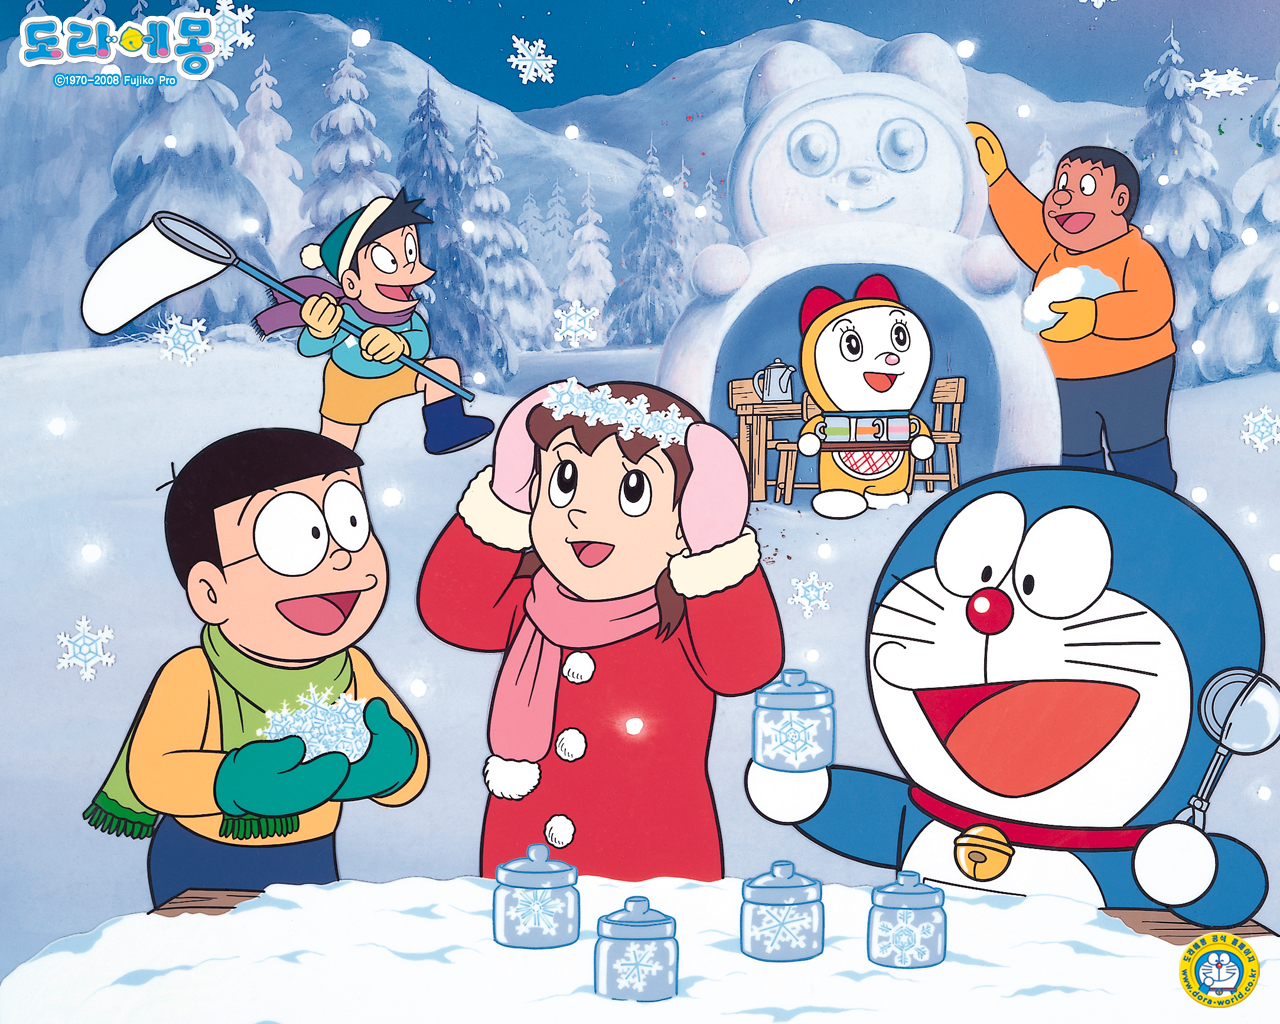 Hãy ngắm nhìn bộ sưu tập hình ảnh Anime Doraemon độc đáo này! Bạn sẽ được chiêm ngưỡng những công trình nghệ thuật tuyệt đẹp, với cách thể hiện phong cách Anime unique. Hãy tận hưởng những trải nghiệm desktop mới và thú vị mà bộ sưu tập này mang lại!